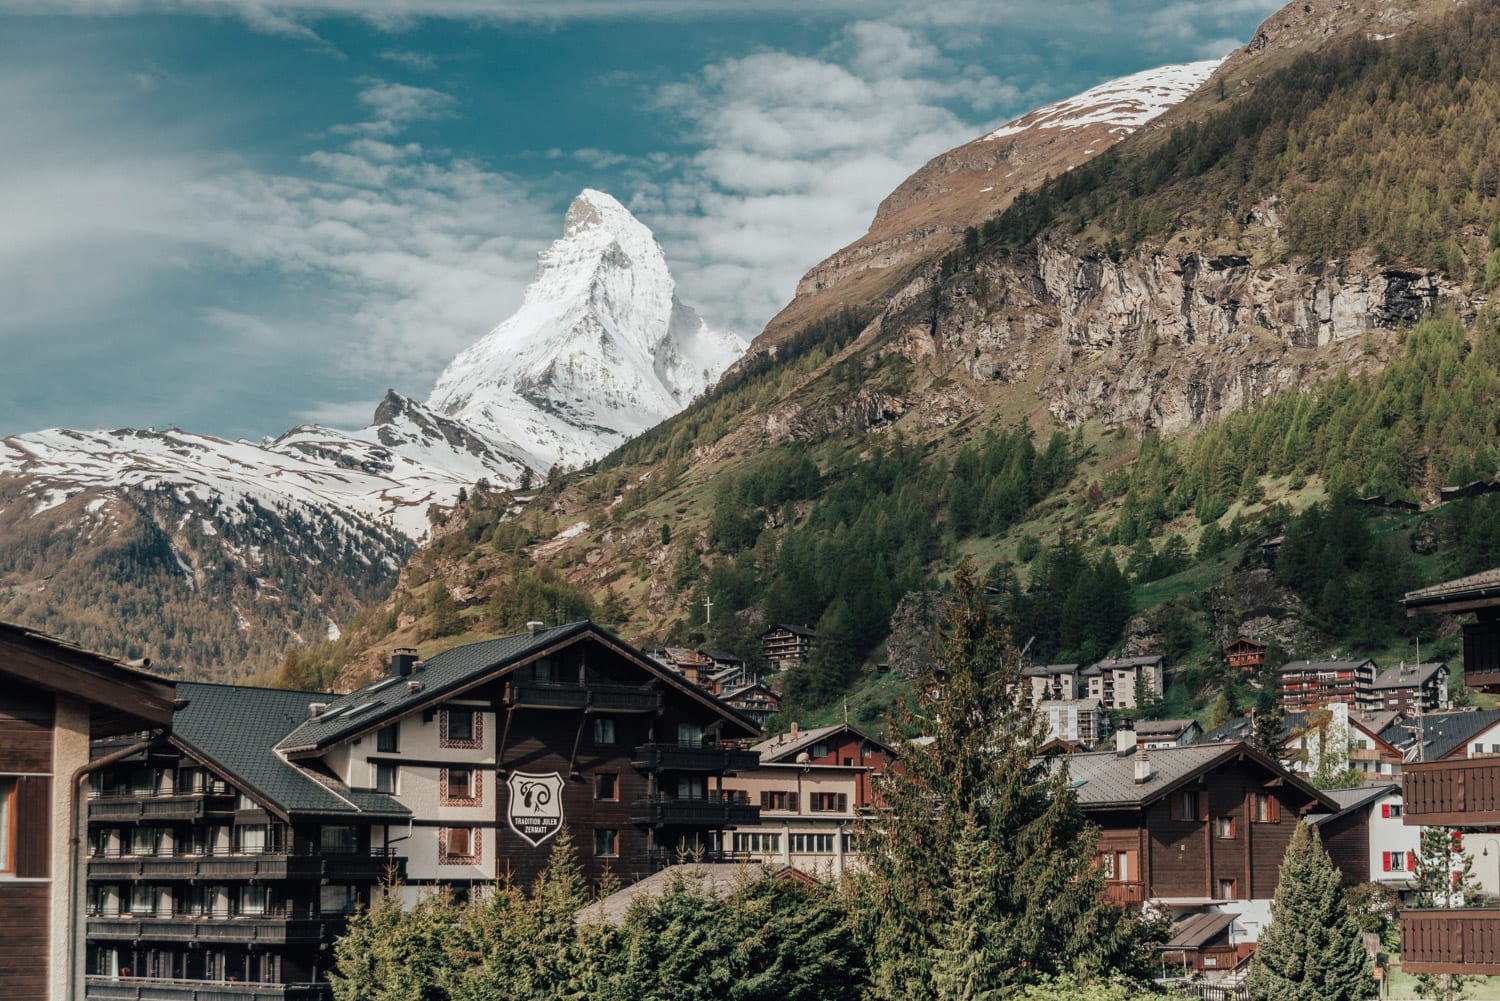 The Matterhorn over the Zermatt Village